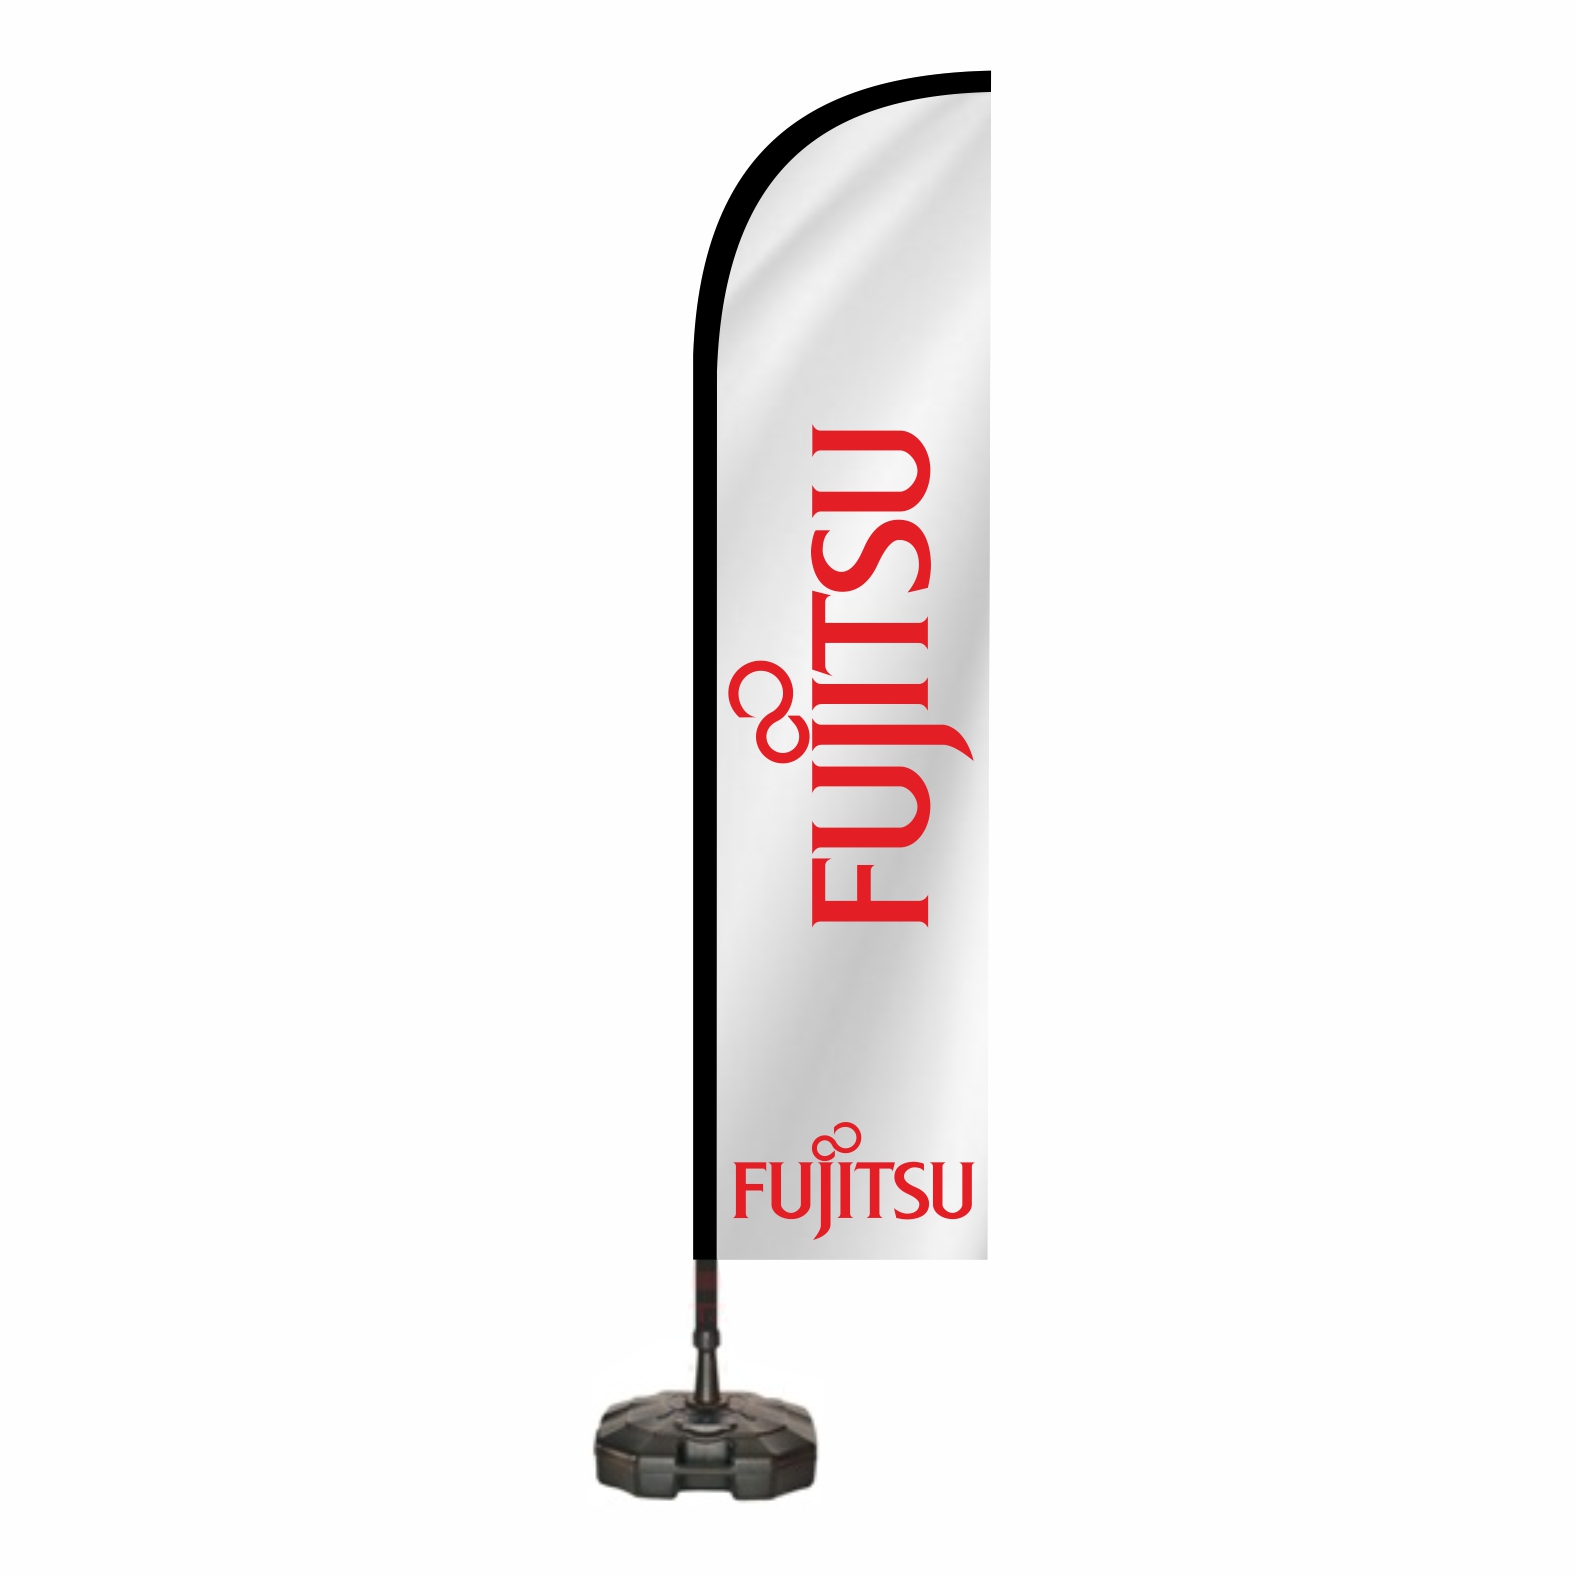 Fujitsu Oltal Bayra Sat Yeri